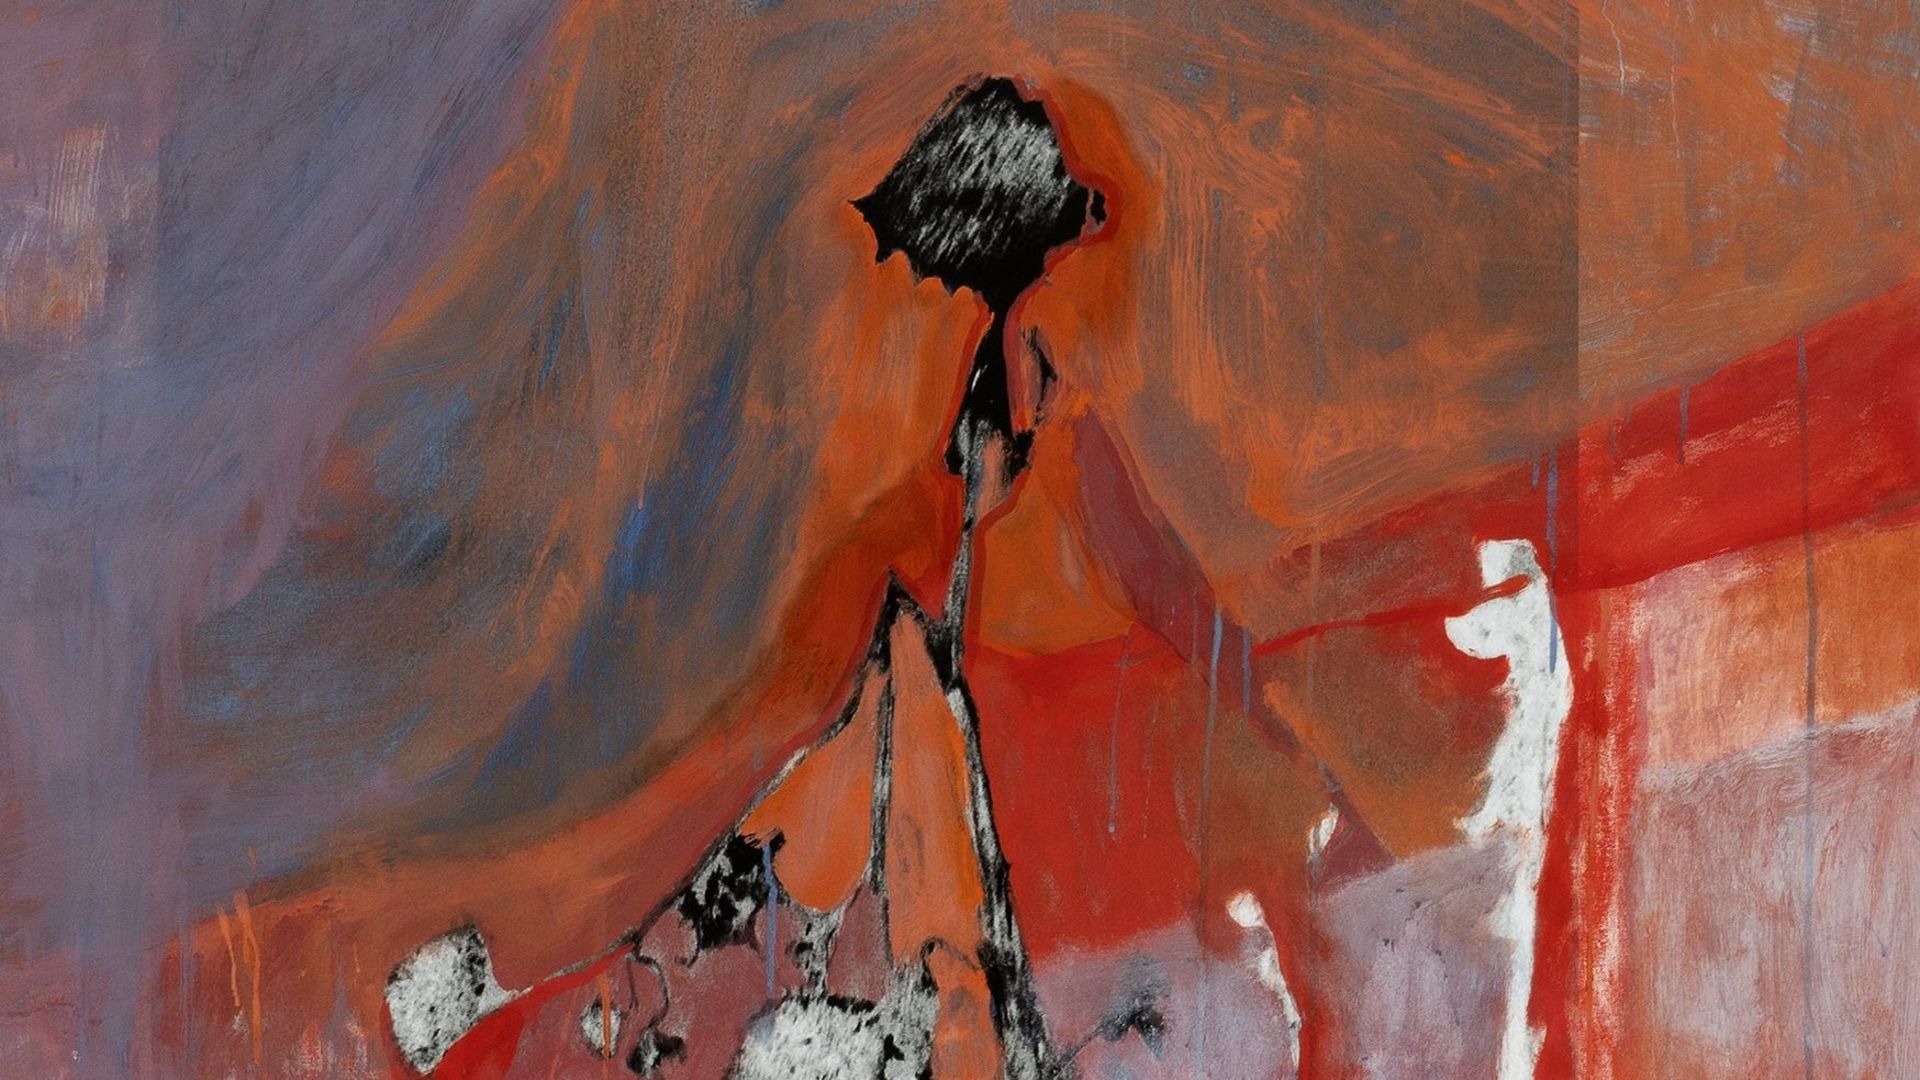 Gemälde: Im Zentrum des Bildes steht ein schemenhafter schwarz-weißer Umriss, verwoben mit bläulich-orangenen und roten Linien und Farbfeldern, die Wärme und Kälte ausstrahlen.